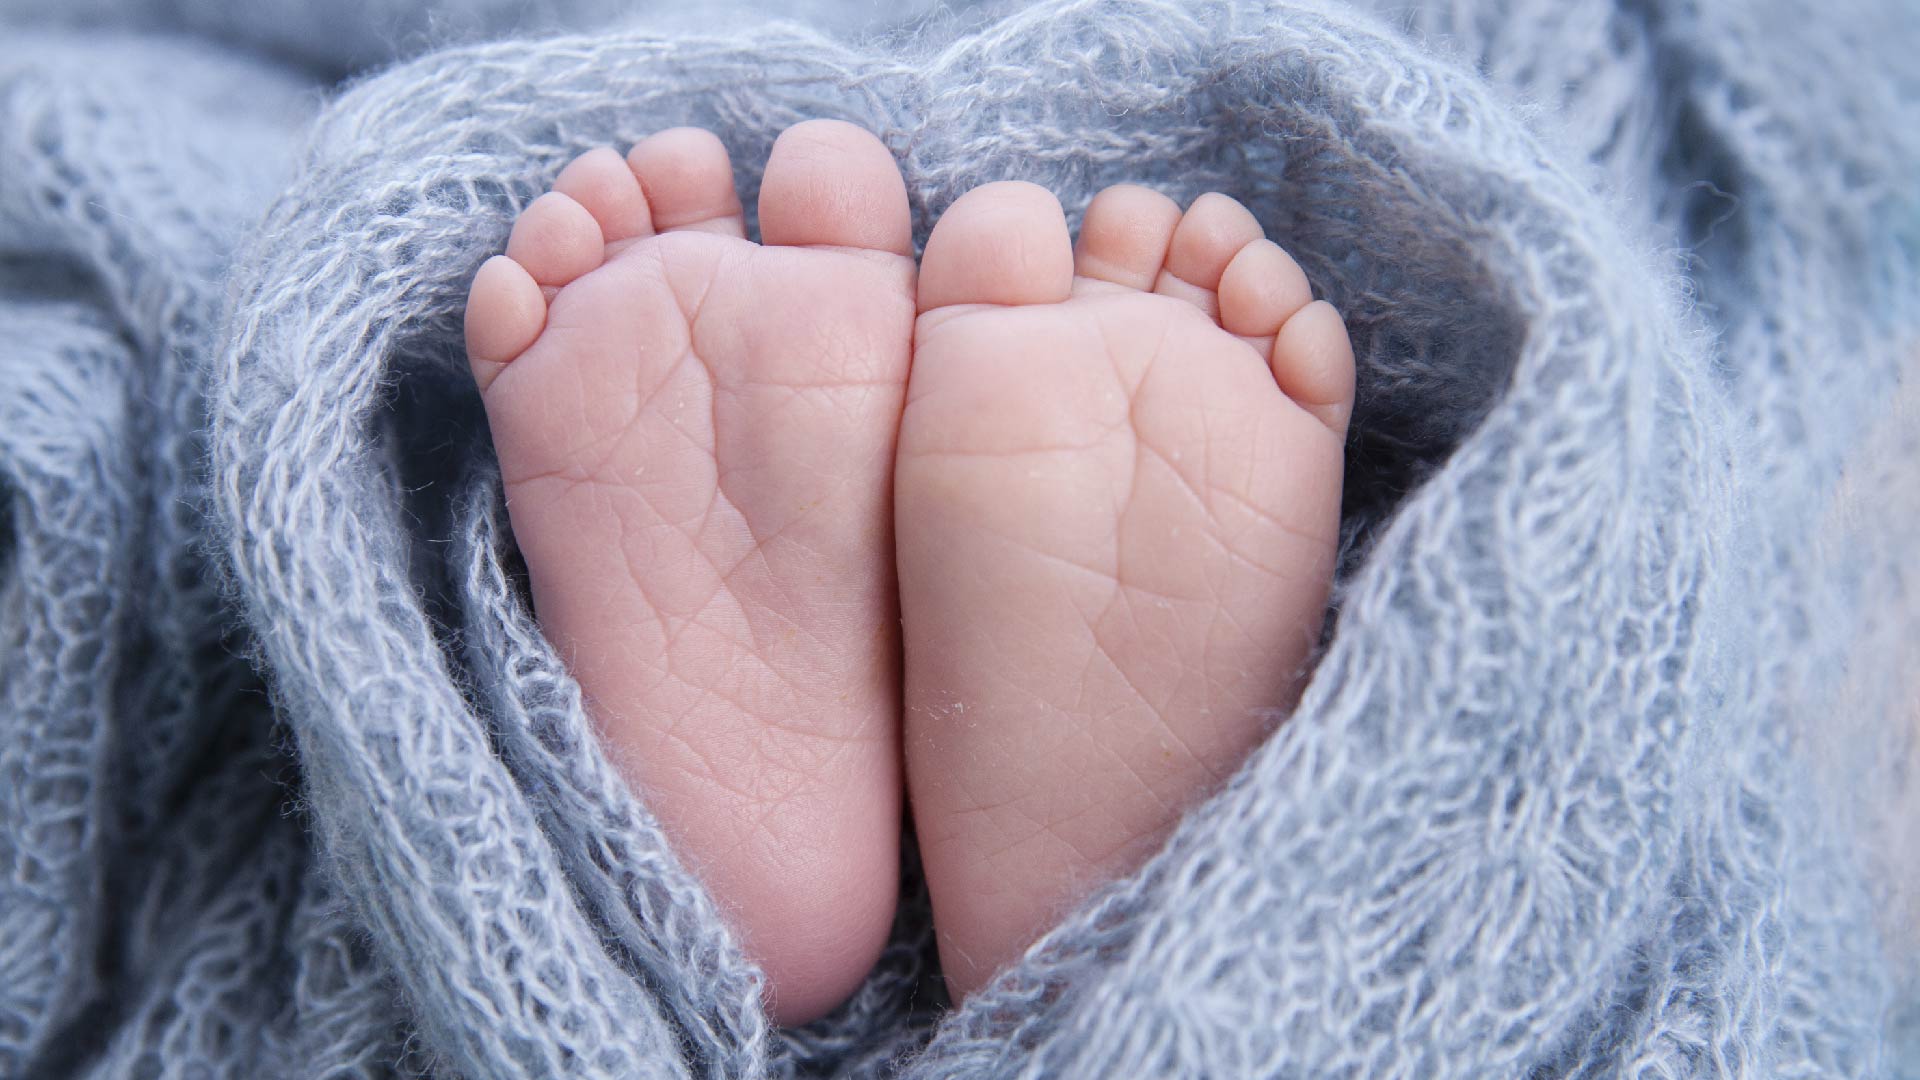 Voetjes van een pasgeborene in een grijs wollen deken gewikkeld